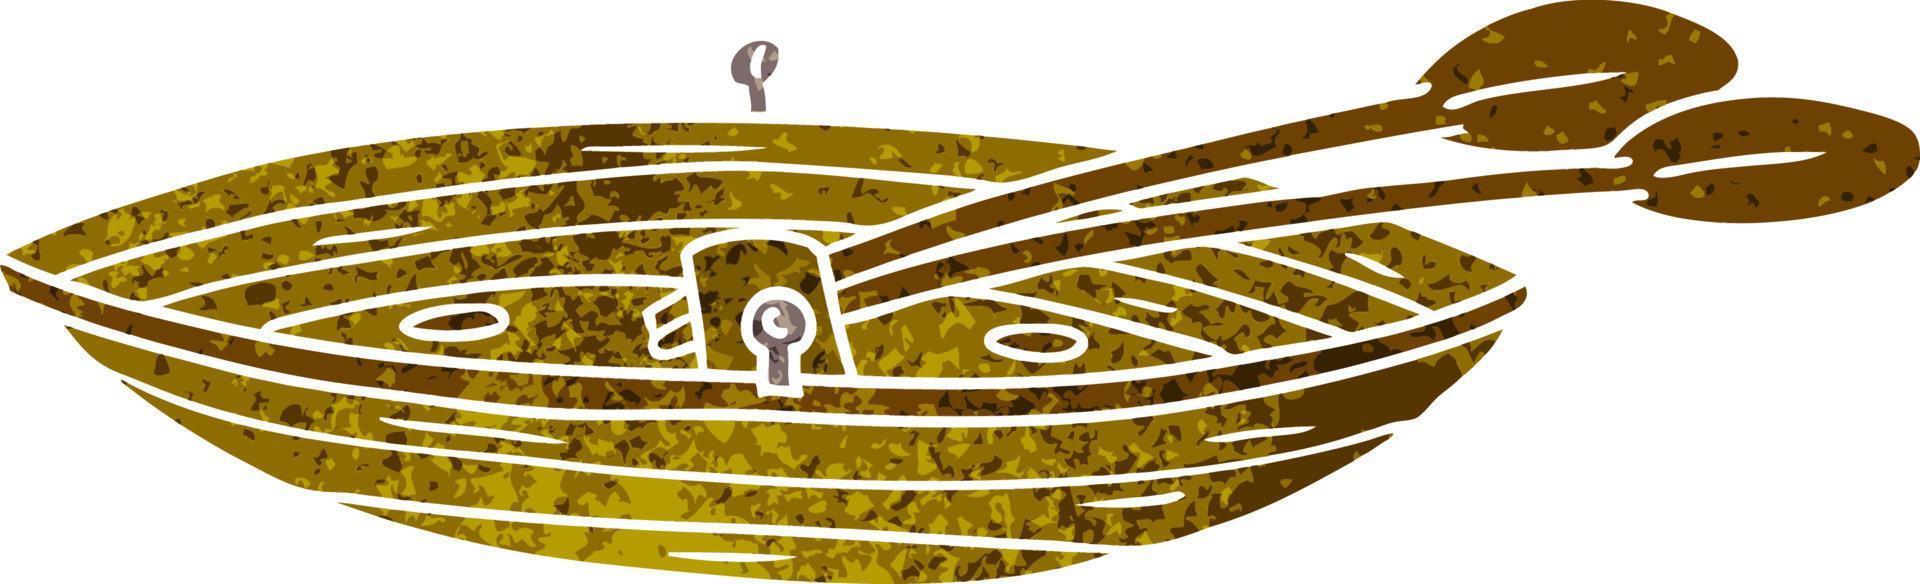 doodle cartoon retrô de um barco de madeira vetor